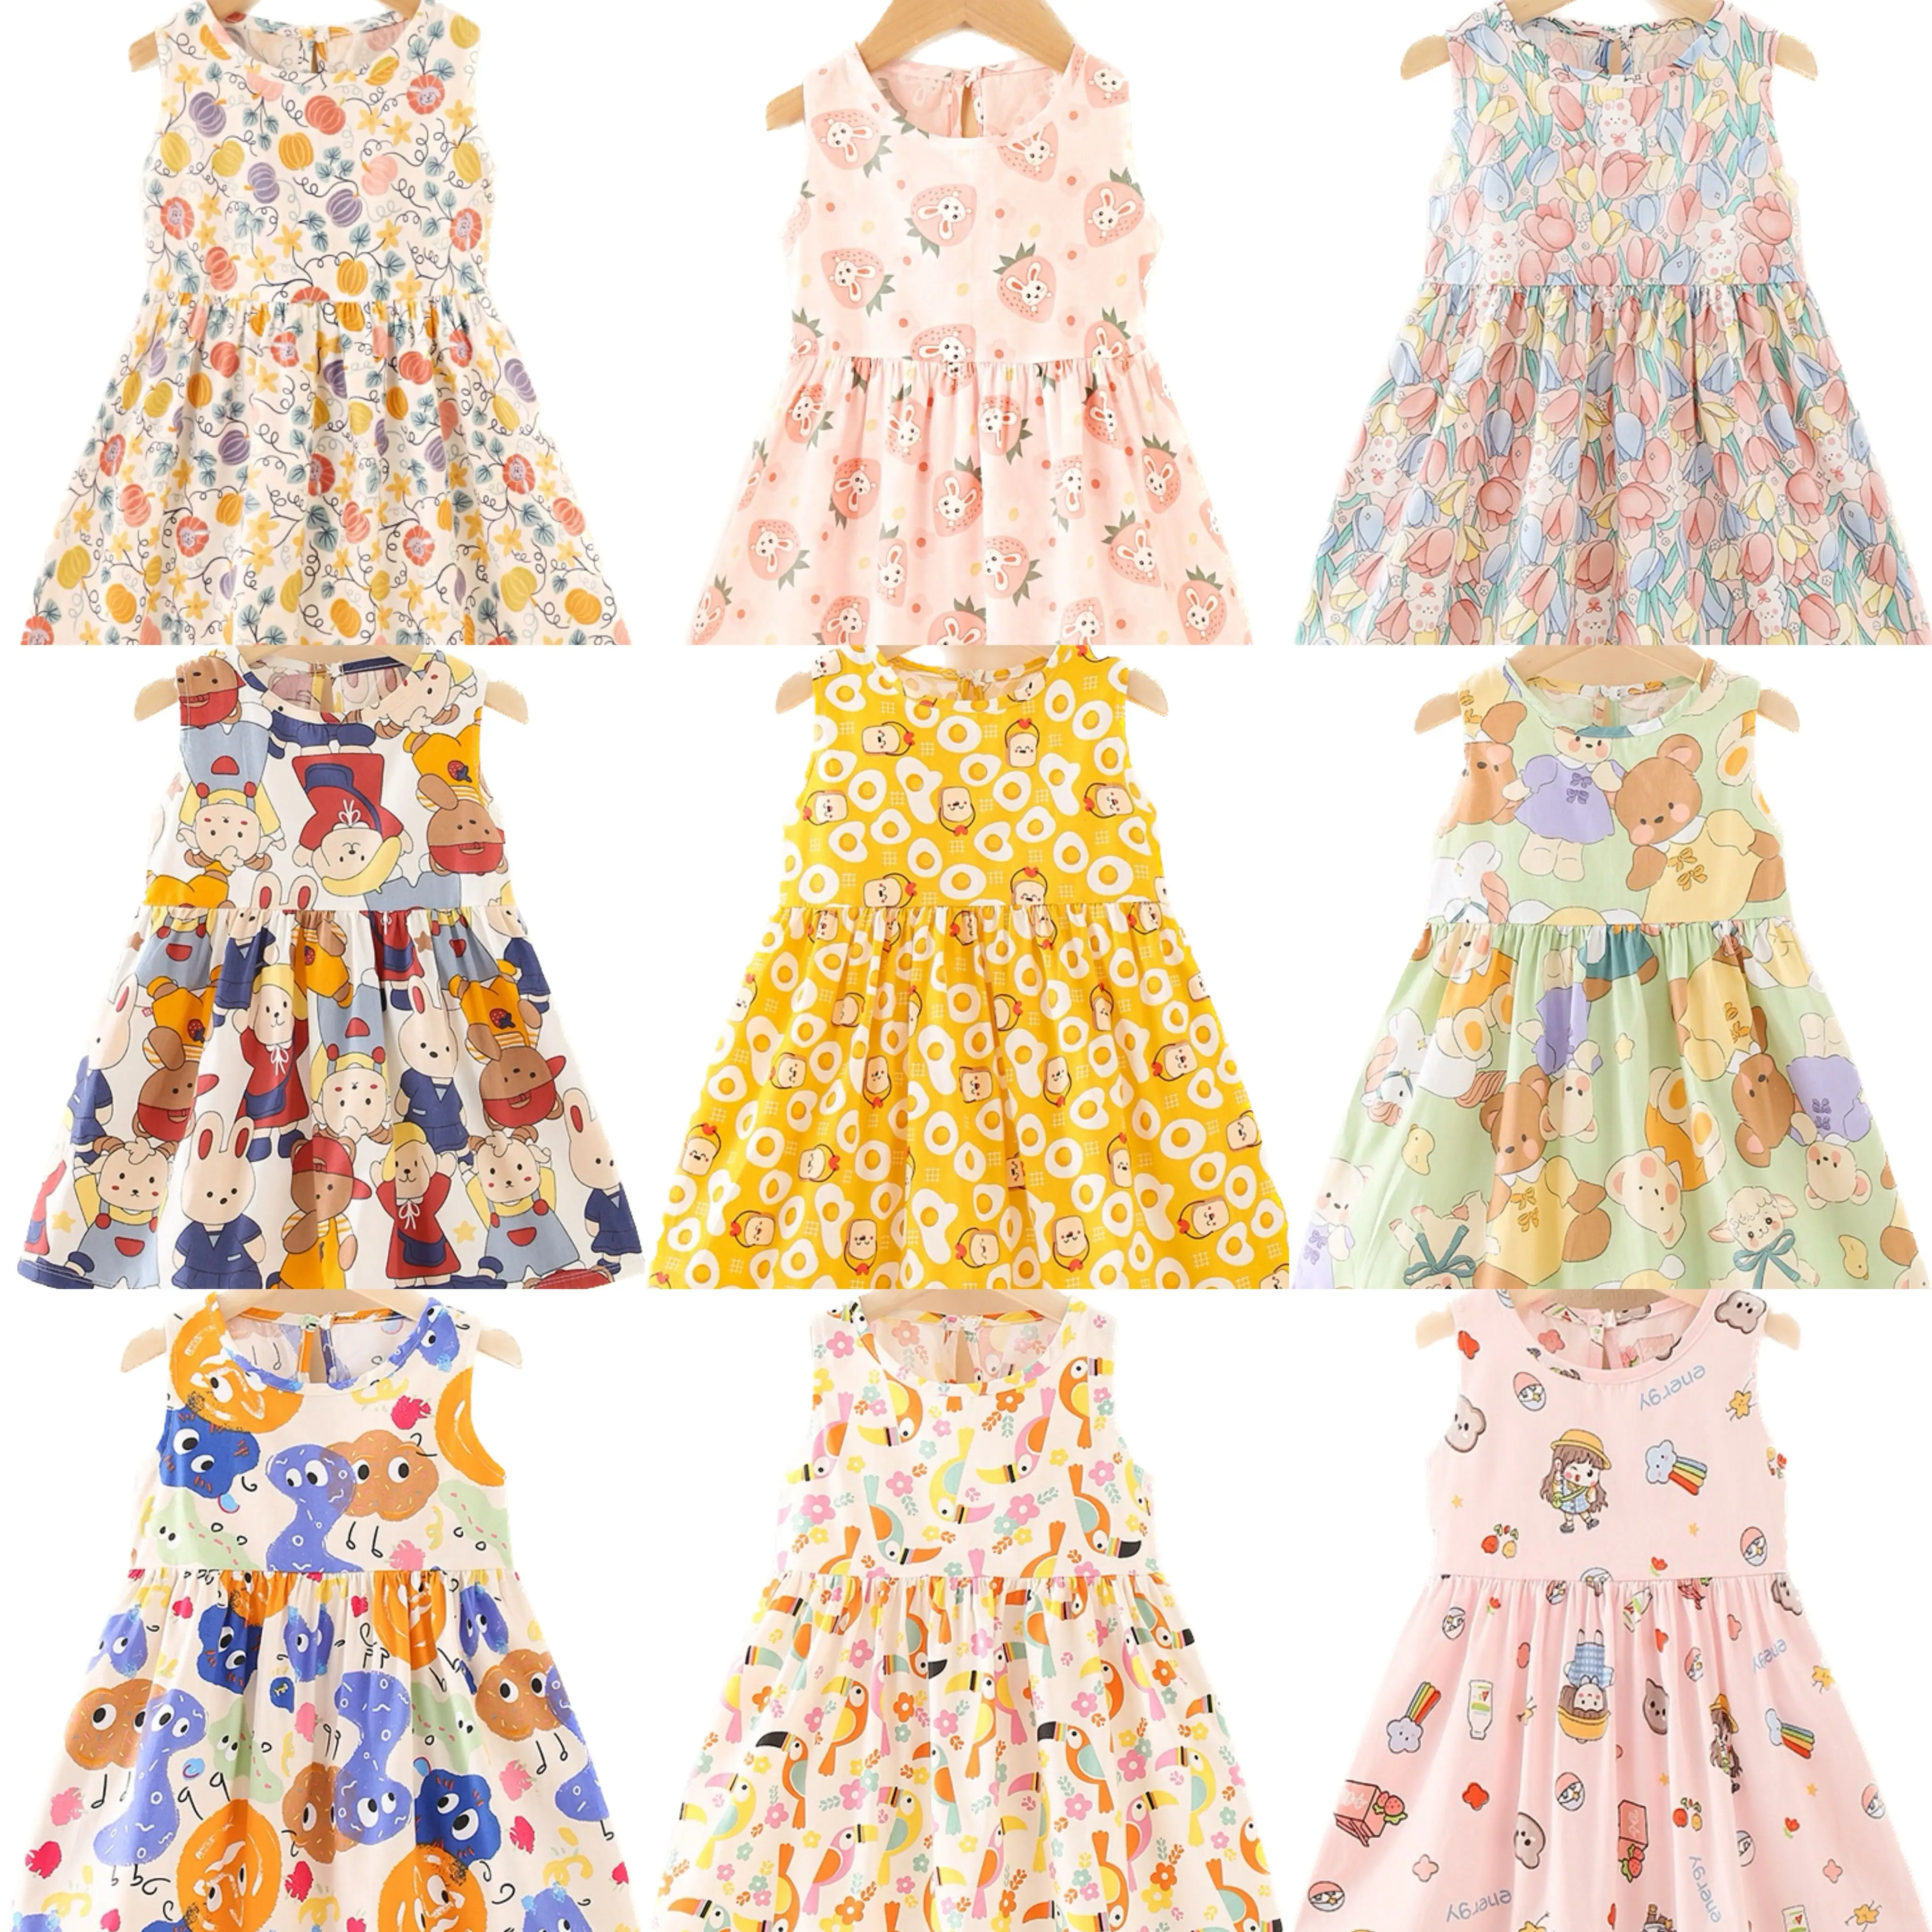 Bébé vêtements nouvelle robe d'été enfants princesse robe enfants vêtements mignon confortable coton fille jupe